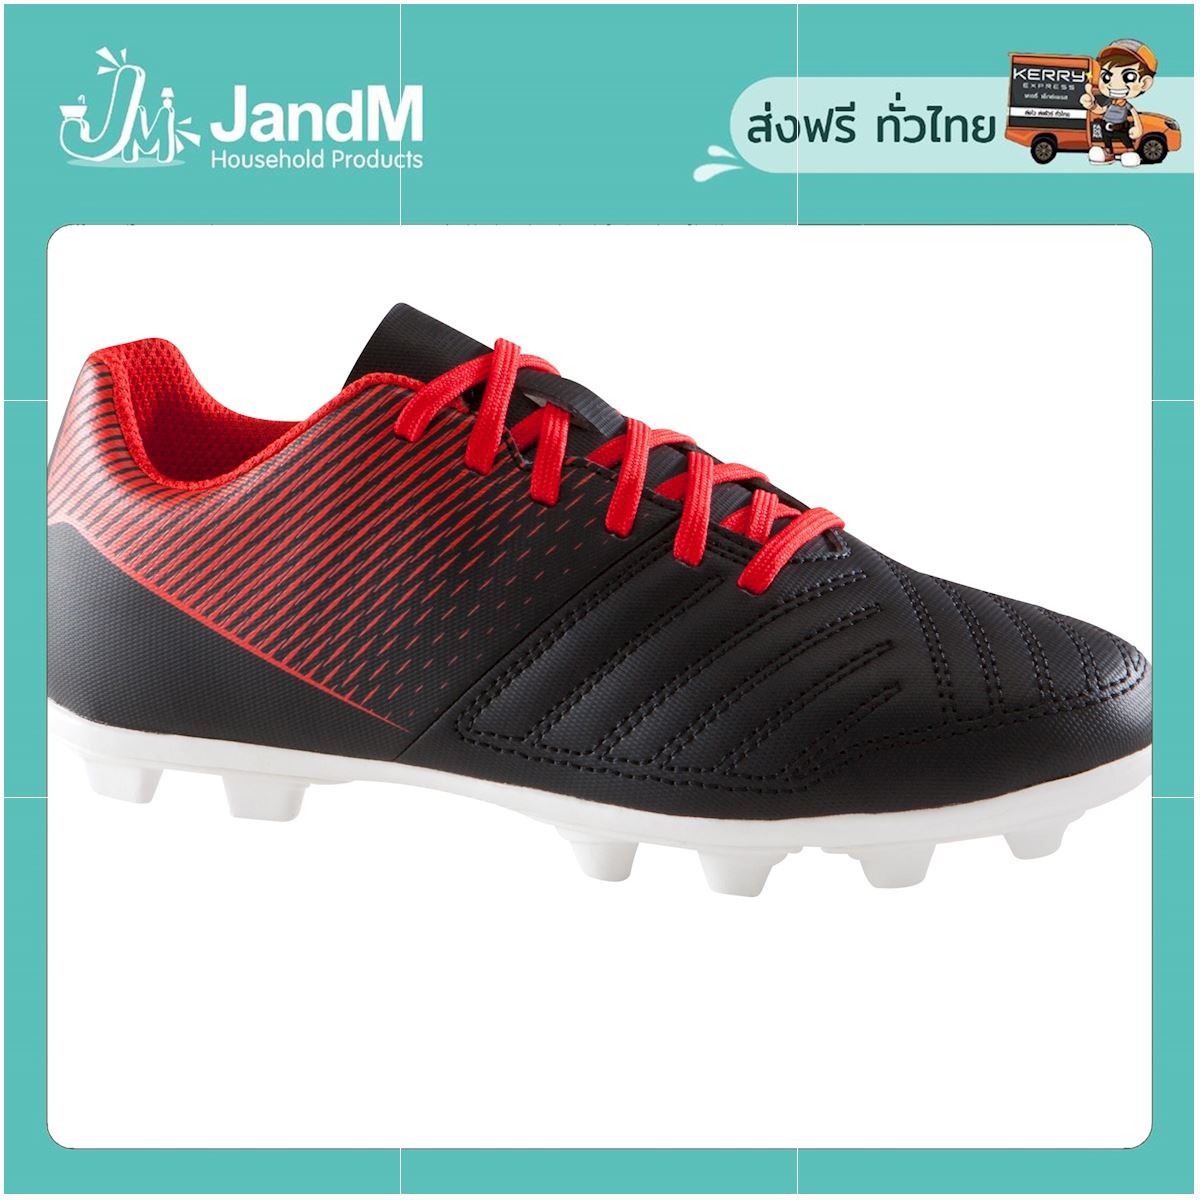 JandM รองเท้าฟุตบอลเด็กสำหรับเล่นบนพื้นสนามแห้งรุ่น Agility 100 FG (สีดำ/ขาว) ส่งkerry มีเก็บเงินปลายทาง